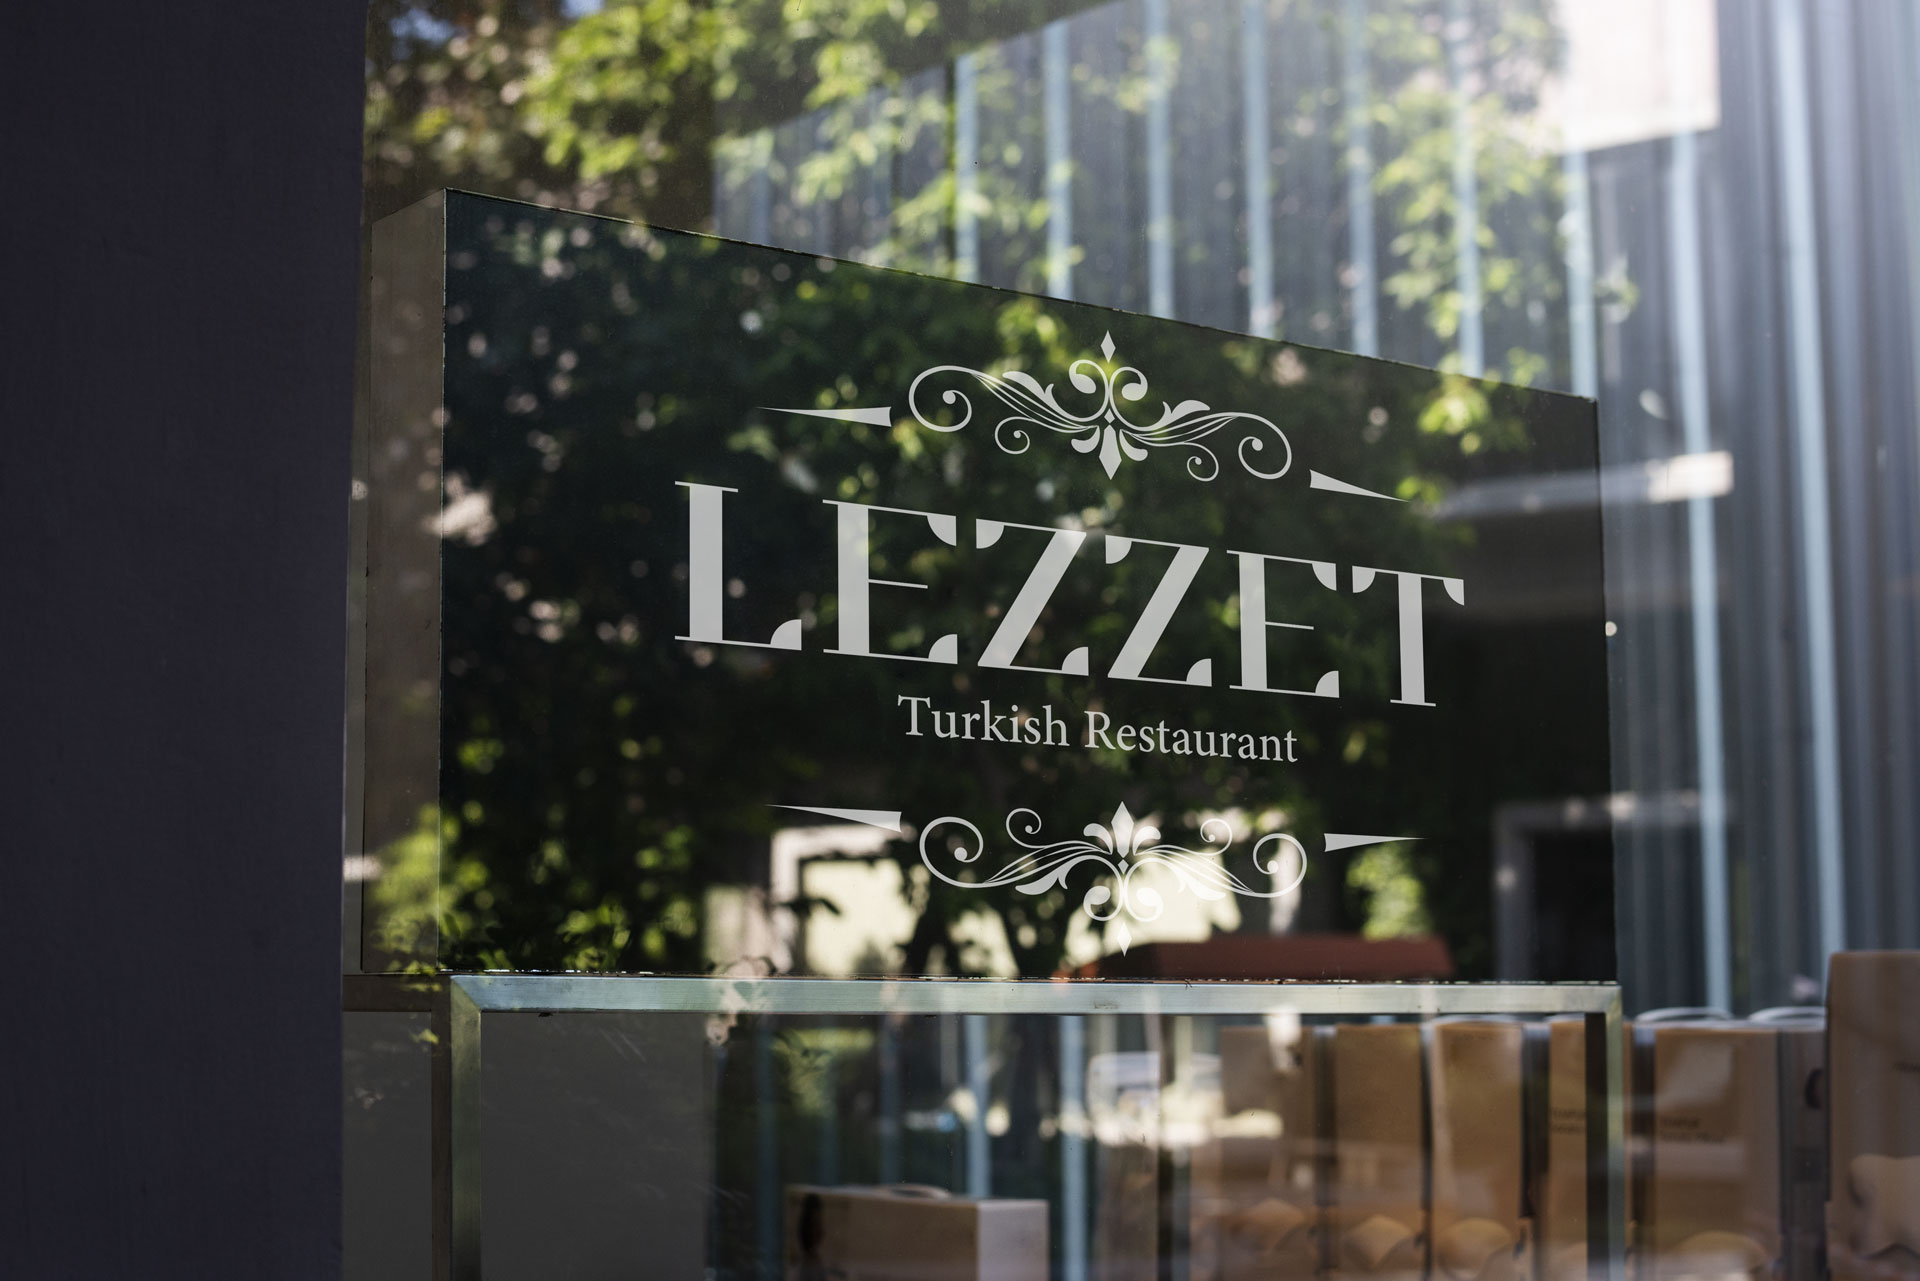 Agence de communication Tothemoon - Lezzet restaurant Turc - Création de logo - Aube - Grand Est